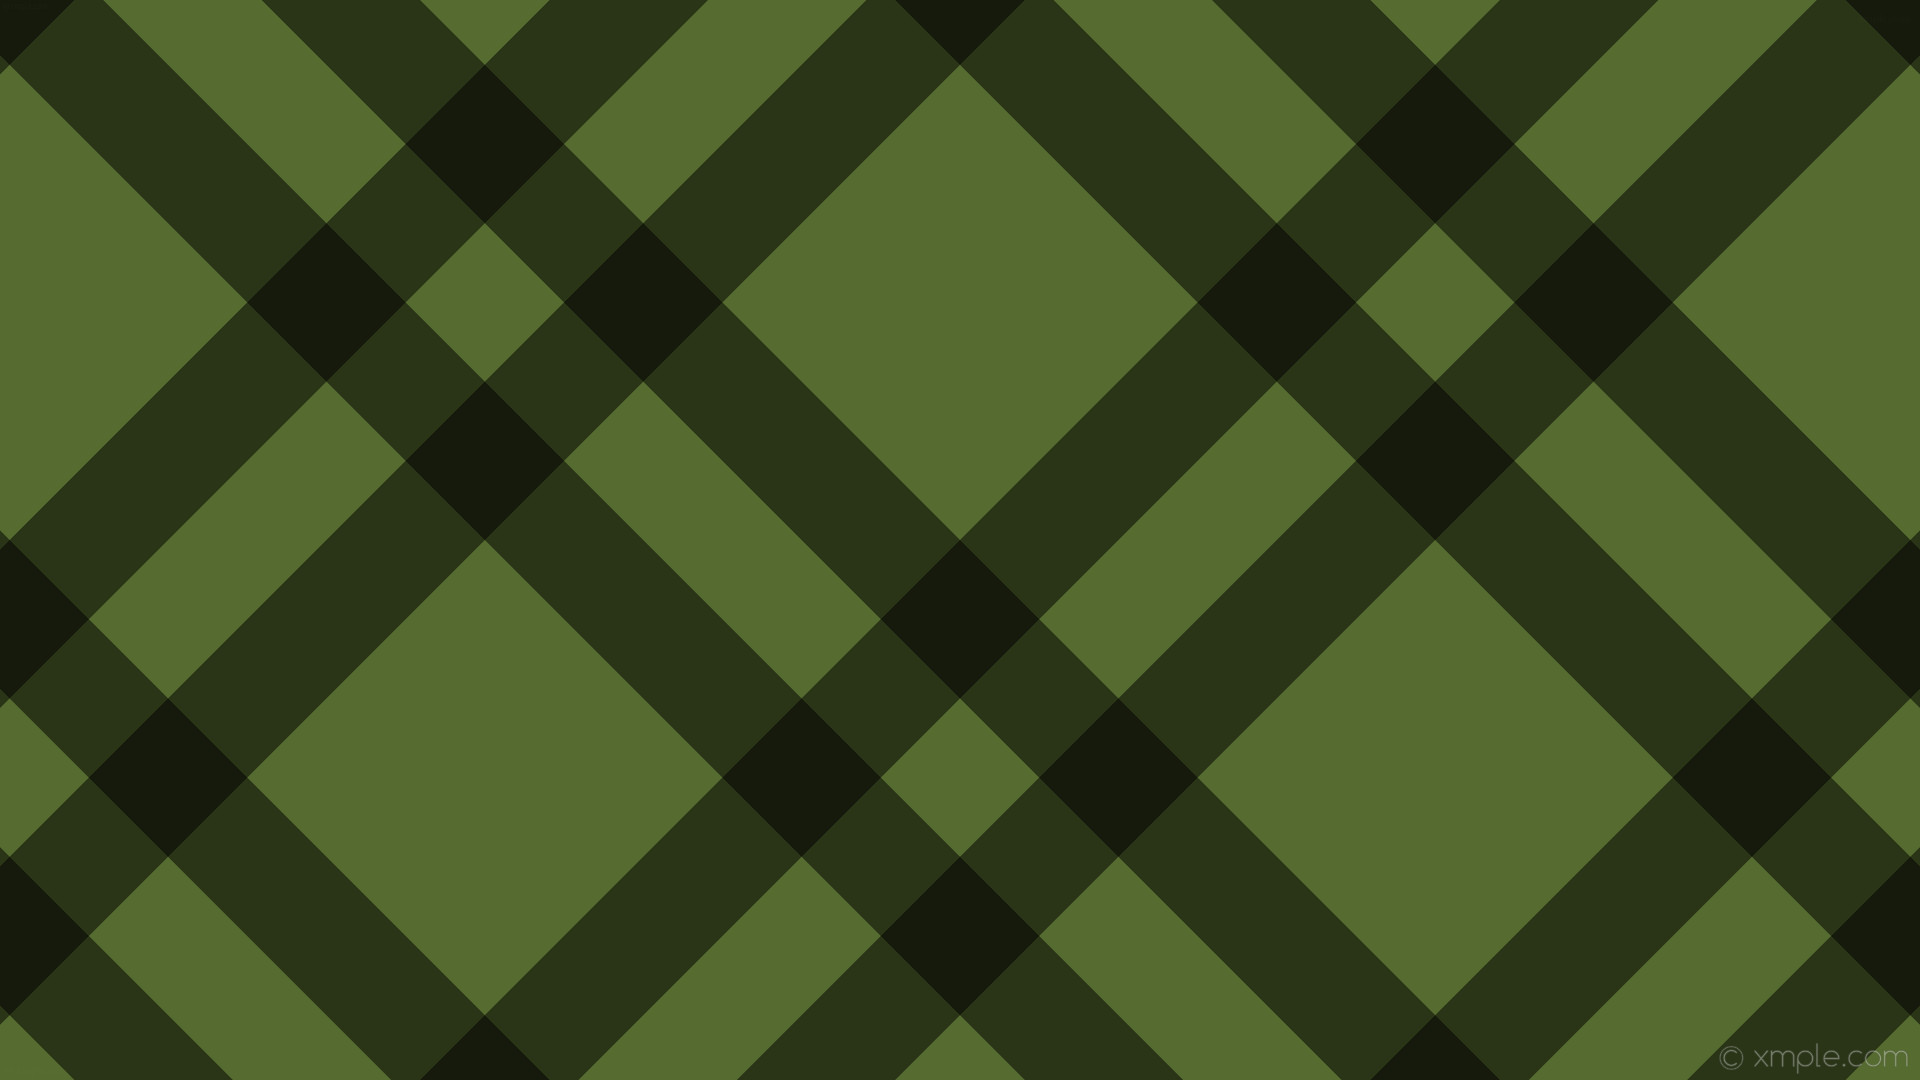 1920x1080 wallpaper green black gingham striped dual dark olive green #556b2f #000000  315Â° 112px